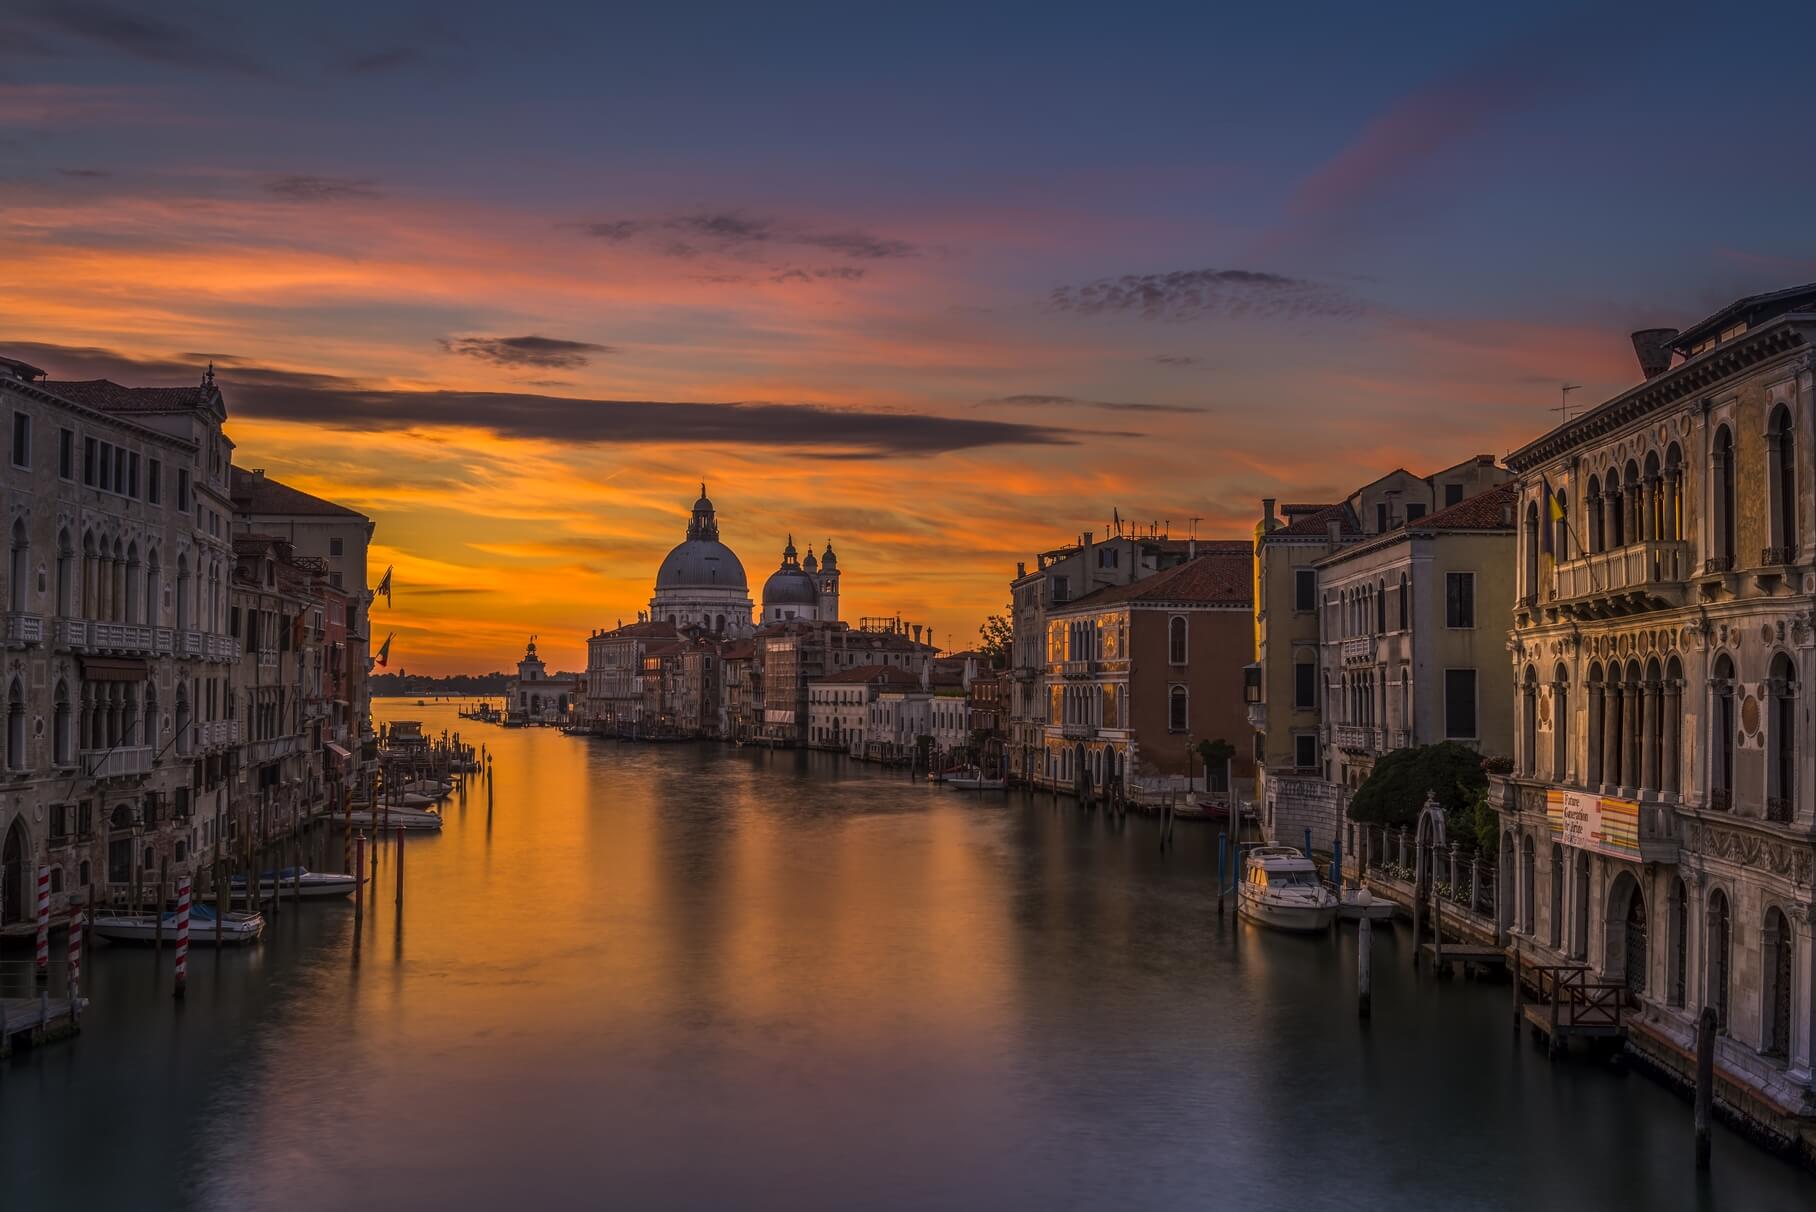 Historia de Venecia